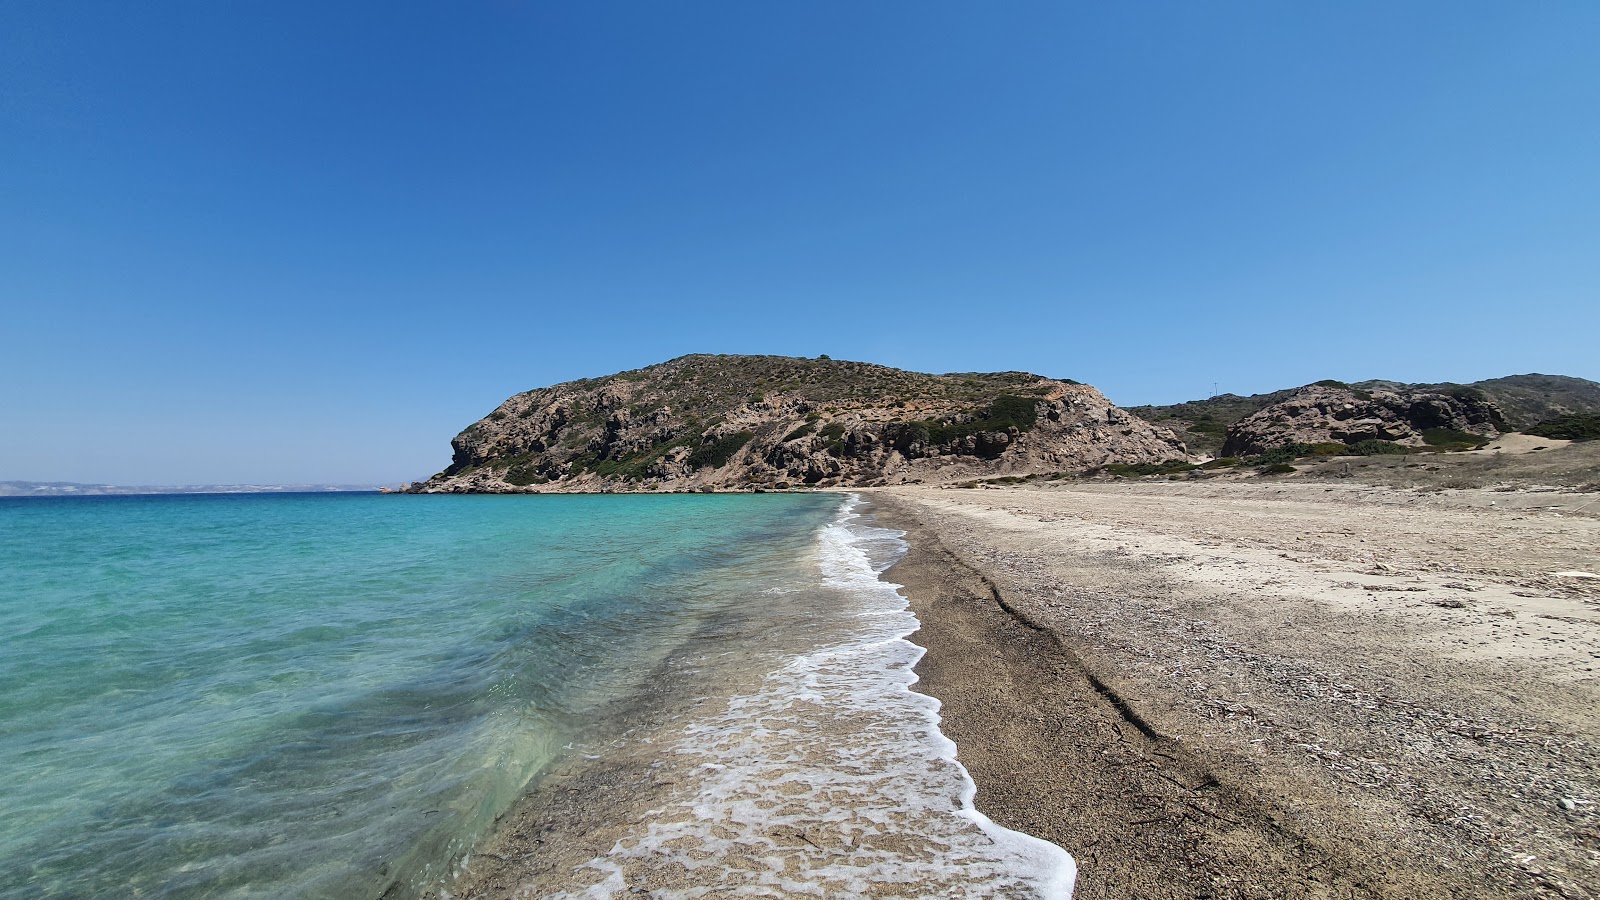 Gyali dodekanisou III'in fotoğrafı gri kum ve çakıl yüzey ile